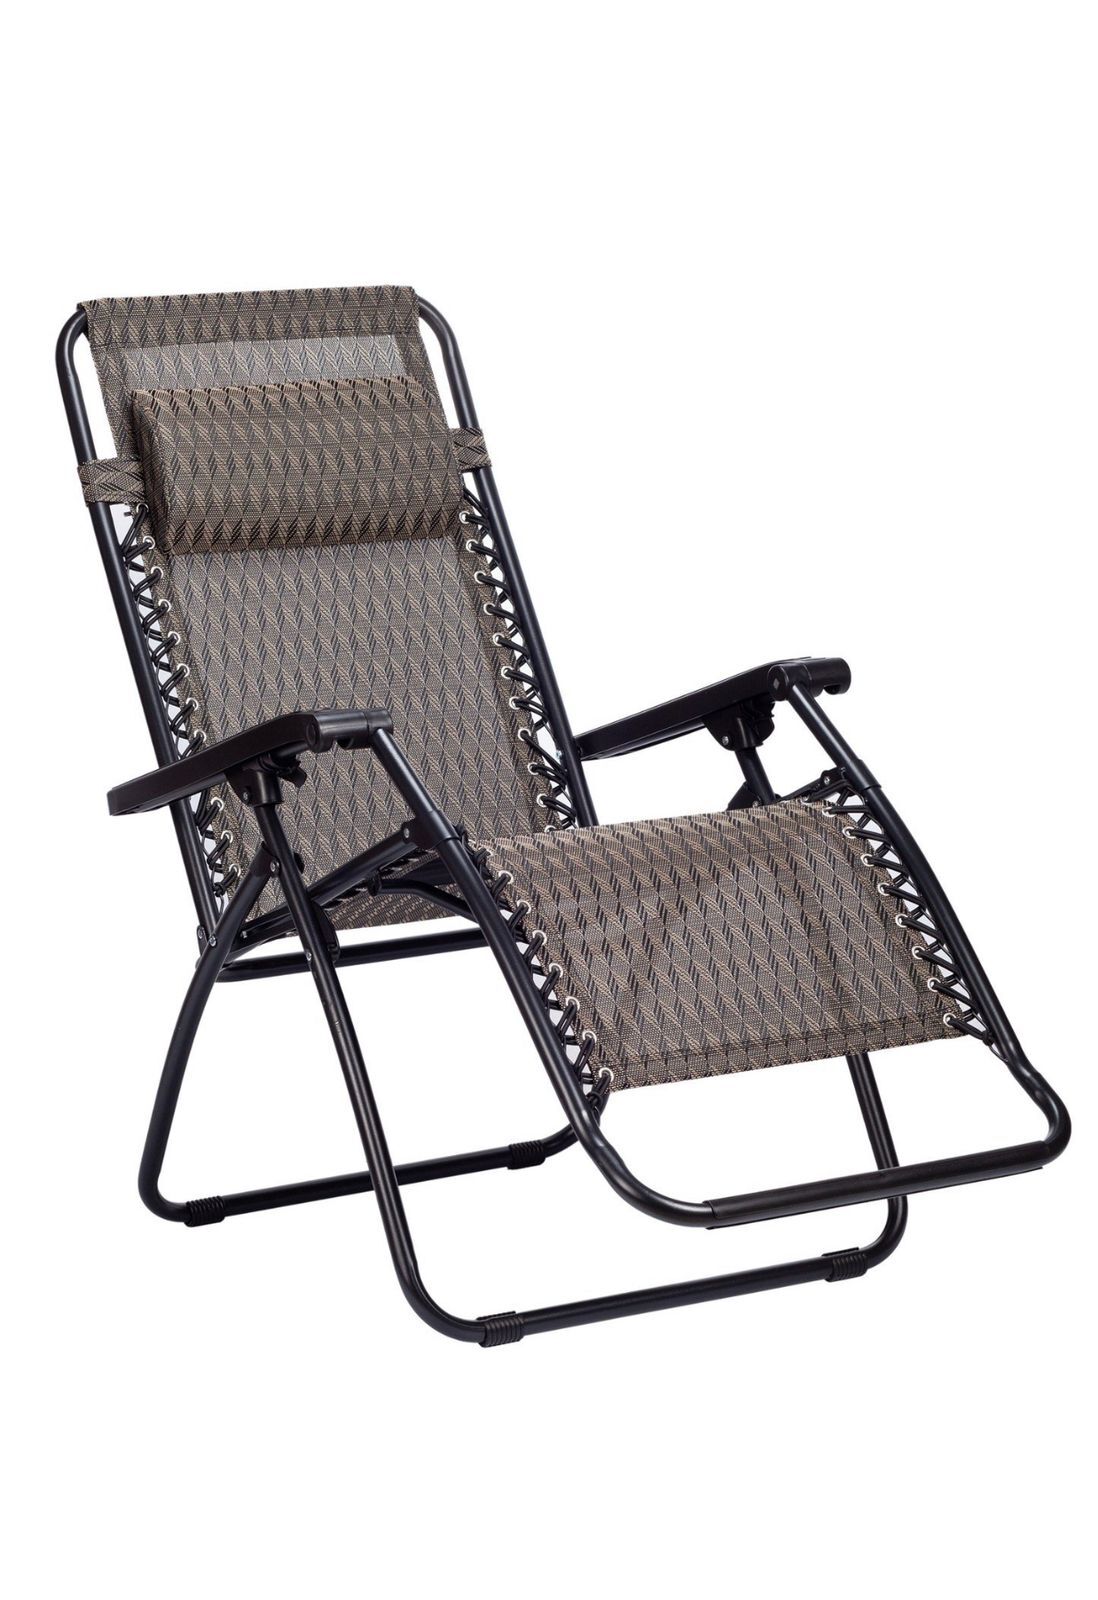 Складное кресло шезлонг / -шезлон /  для дачи и рыбалки .